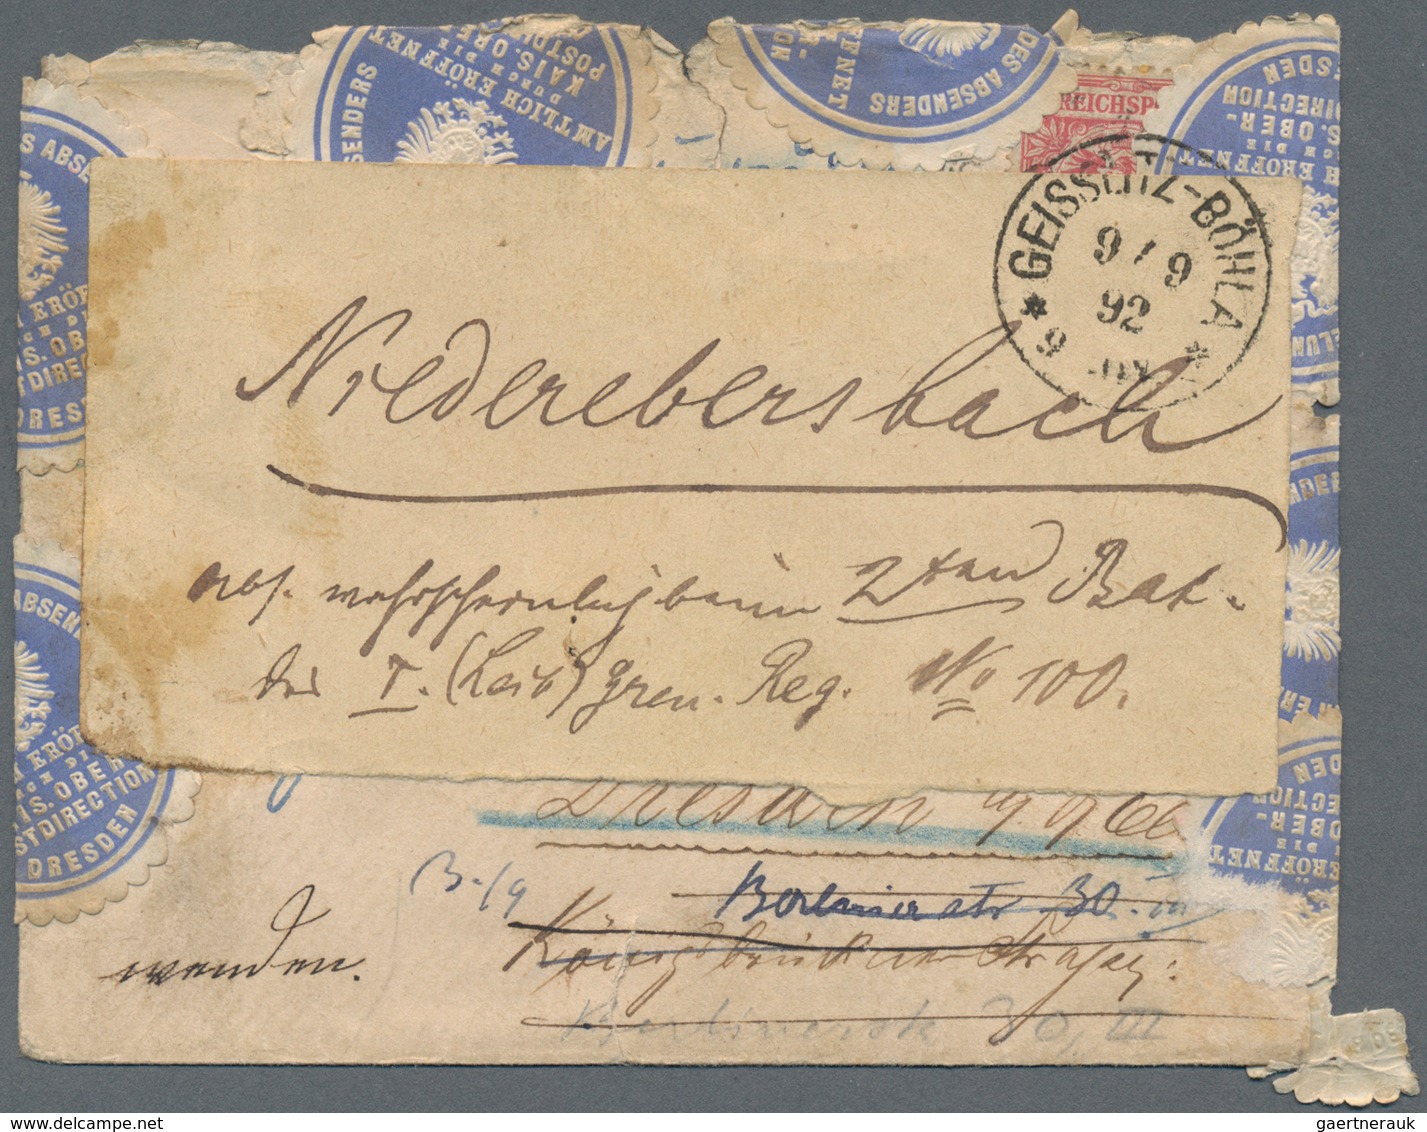 Deutsches Reich: 1882/1944, kleiner Posten von ca. 100 Briefe, Karten, Ansichtskarten und überwiegen